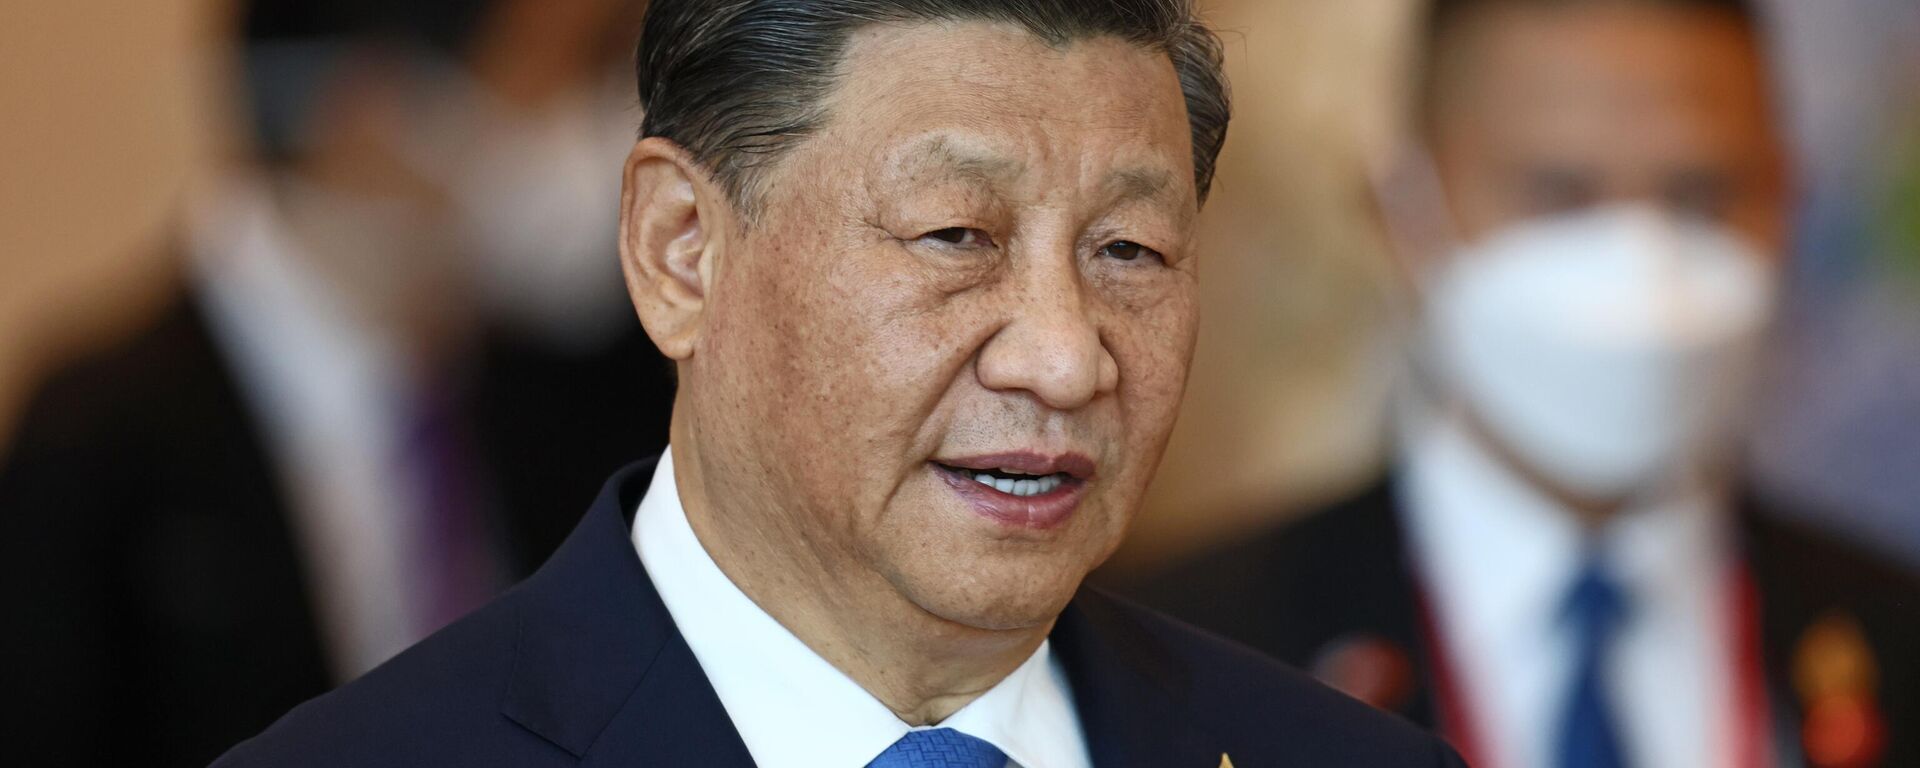 Xi Jinping, presidente de China, en la reunión de líderes económicos de la APEC durante la Cumbre del Foro de Cooperación Económica Asia-Pacífico, en Bangkok, Tailandia, el 19 de noviembre de 2022 - Sputnik Mundo, 1920, 17.10.2023